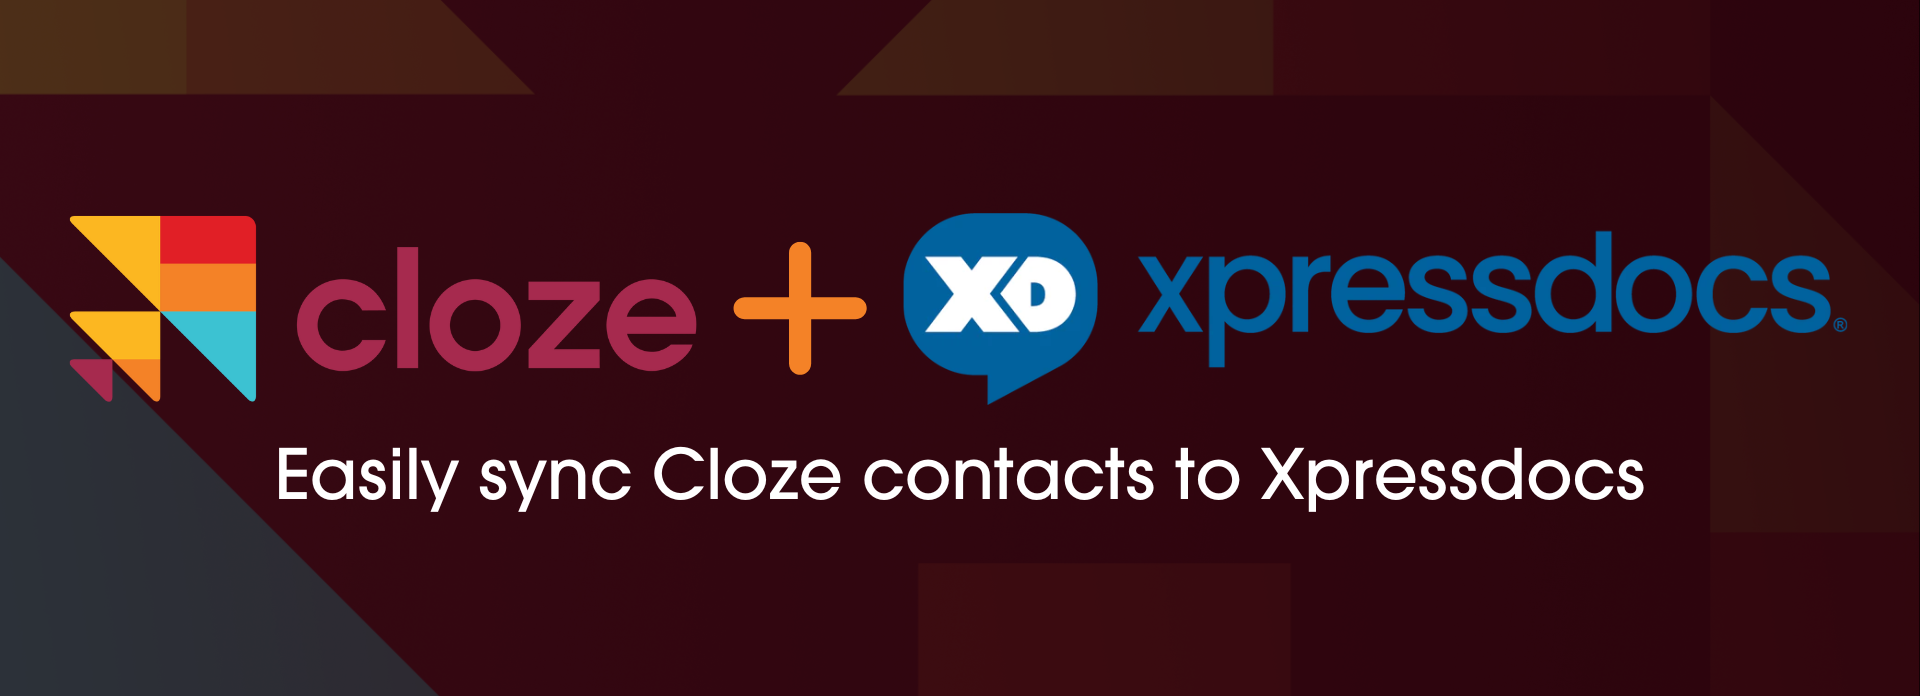 Cloze + Xpressdocs = easily sync Cloze contacts to Xpressdocs.